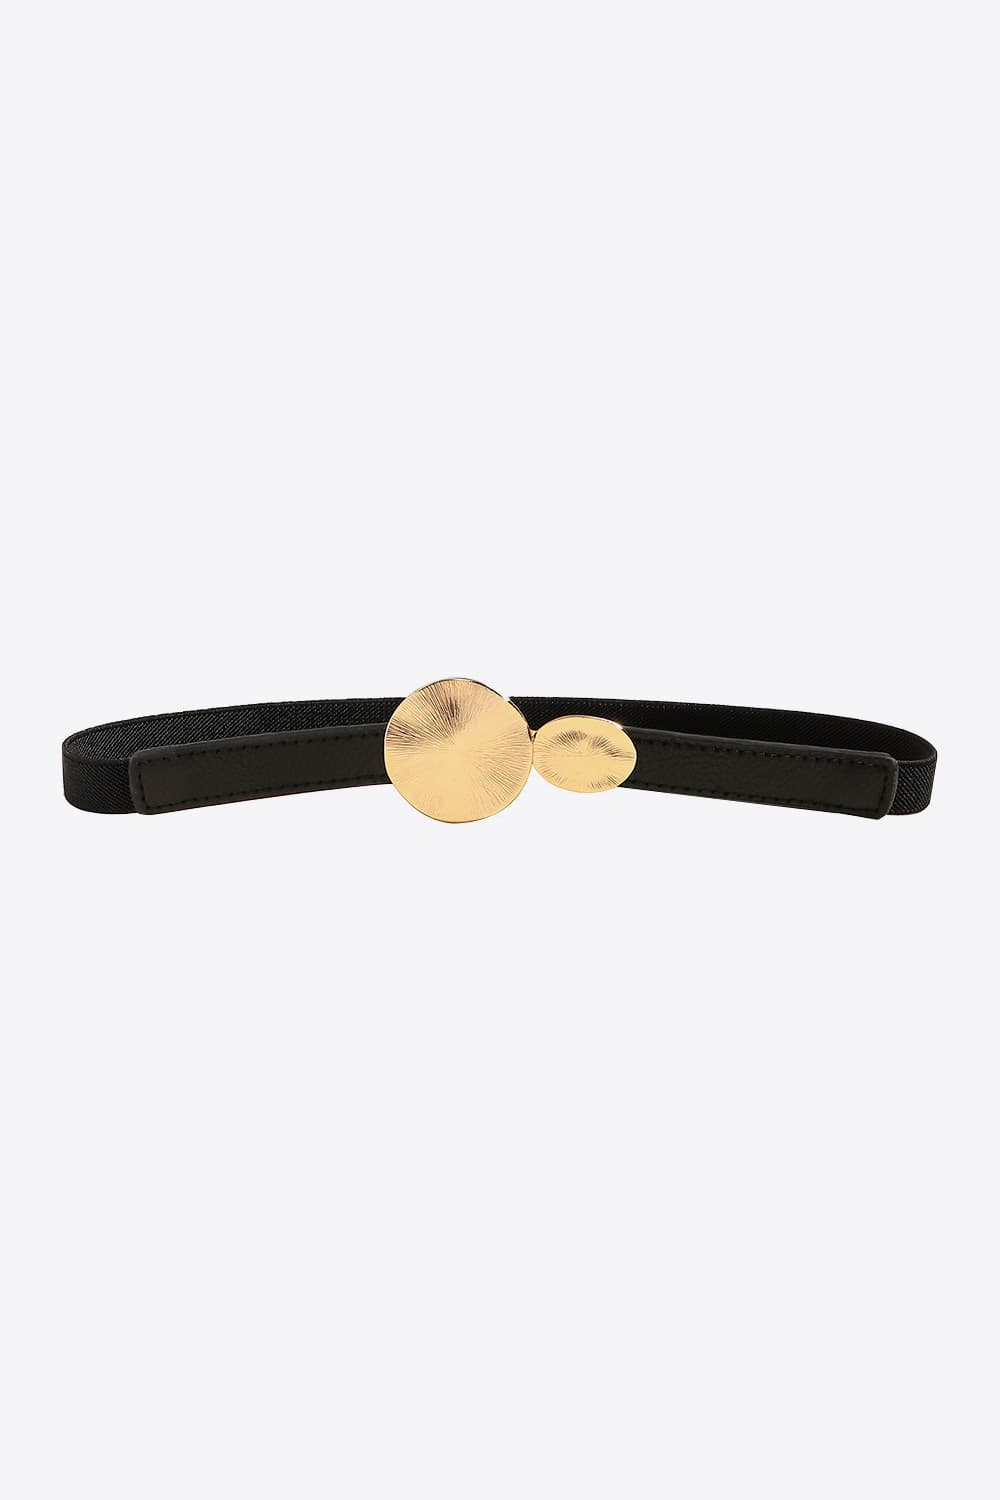 Black, Caramel, or Ivory One Size PU Leather Belt